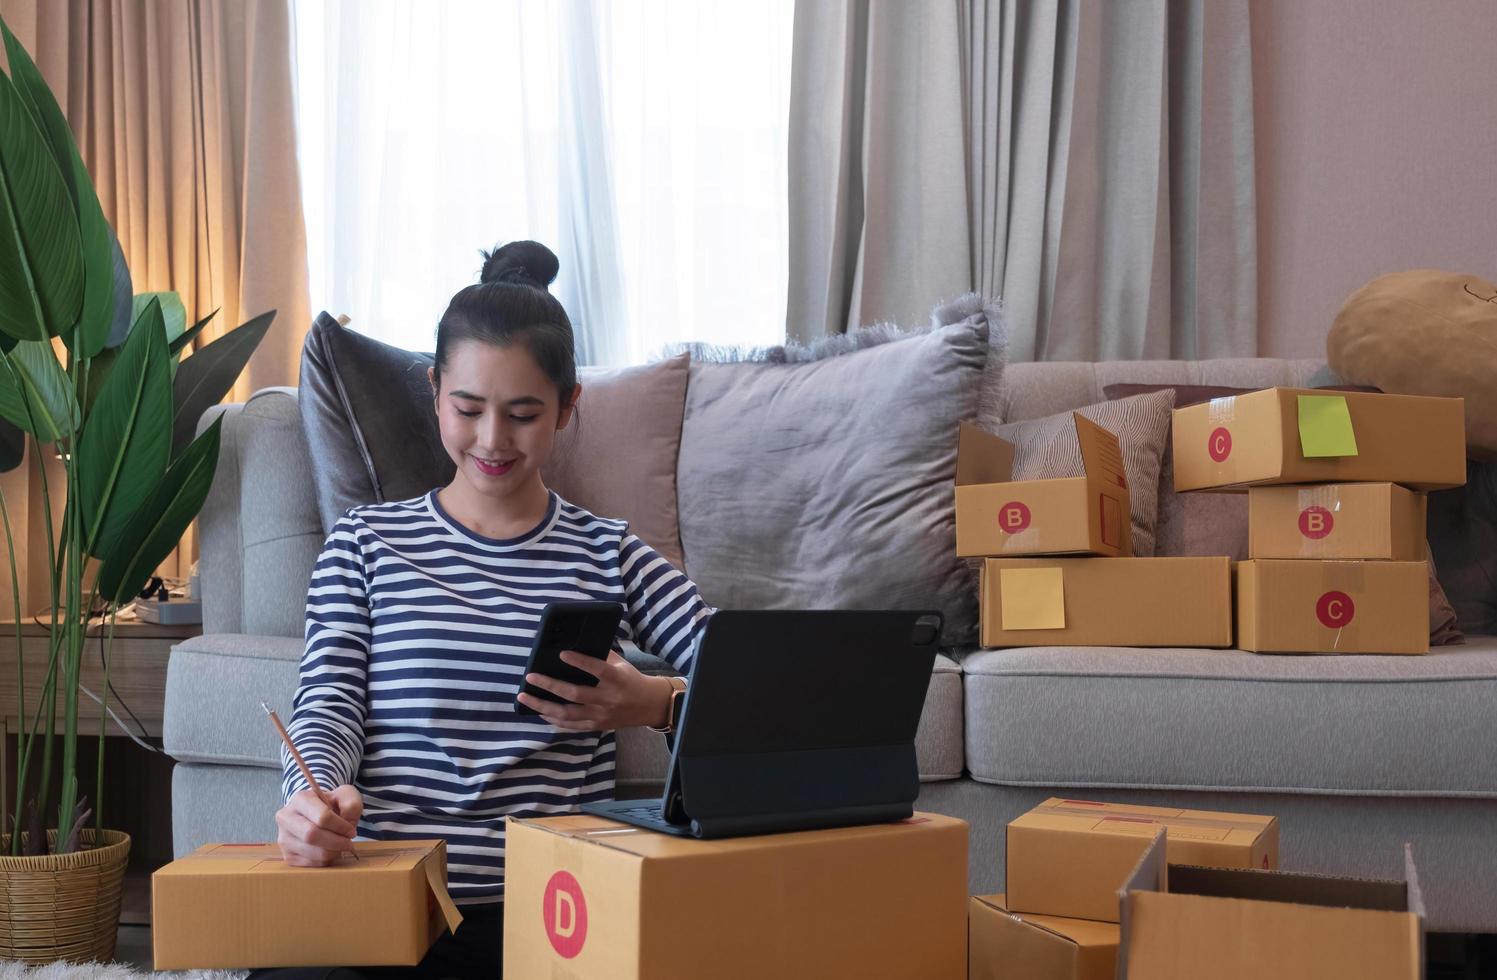 onlinemarknadsföring, ung nystartad småföretagare skriver adress på kartong från listordning. småföretagare sme eller frilansande asiatisk kvinna som arbetar med låda hemma foto